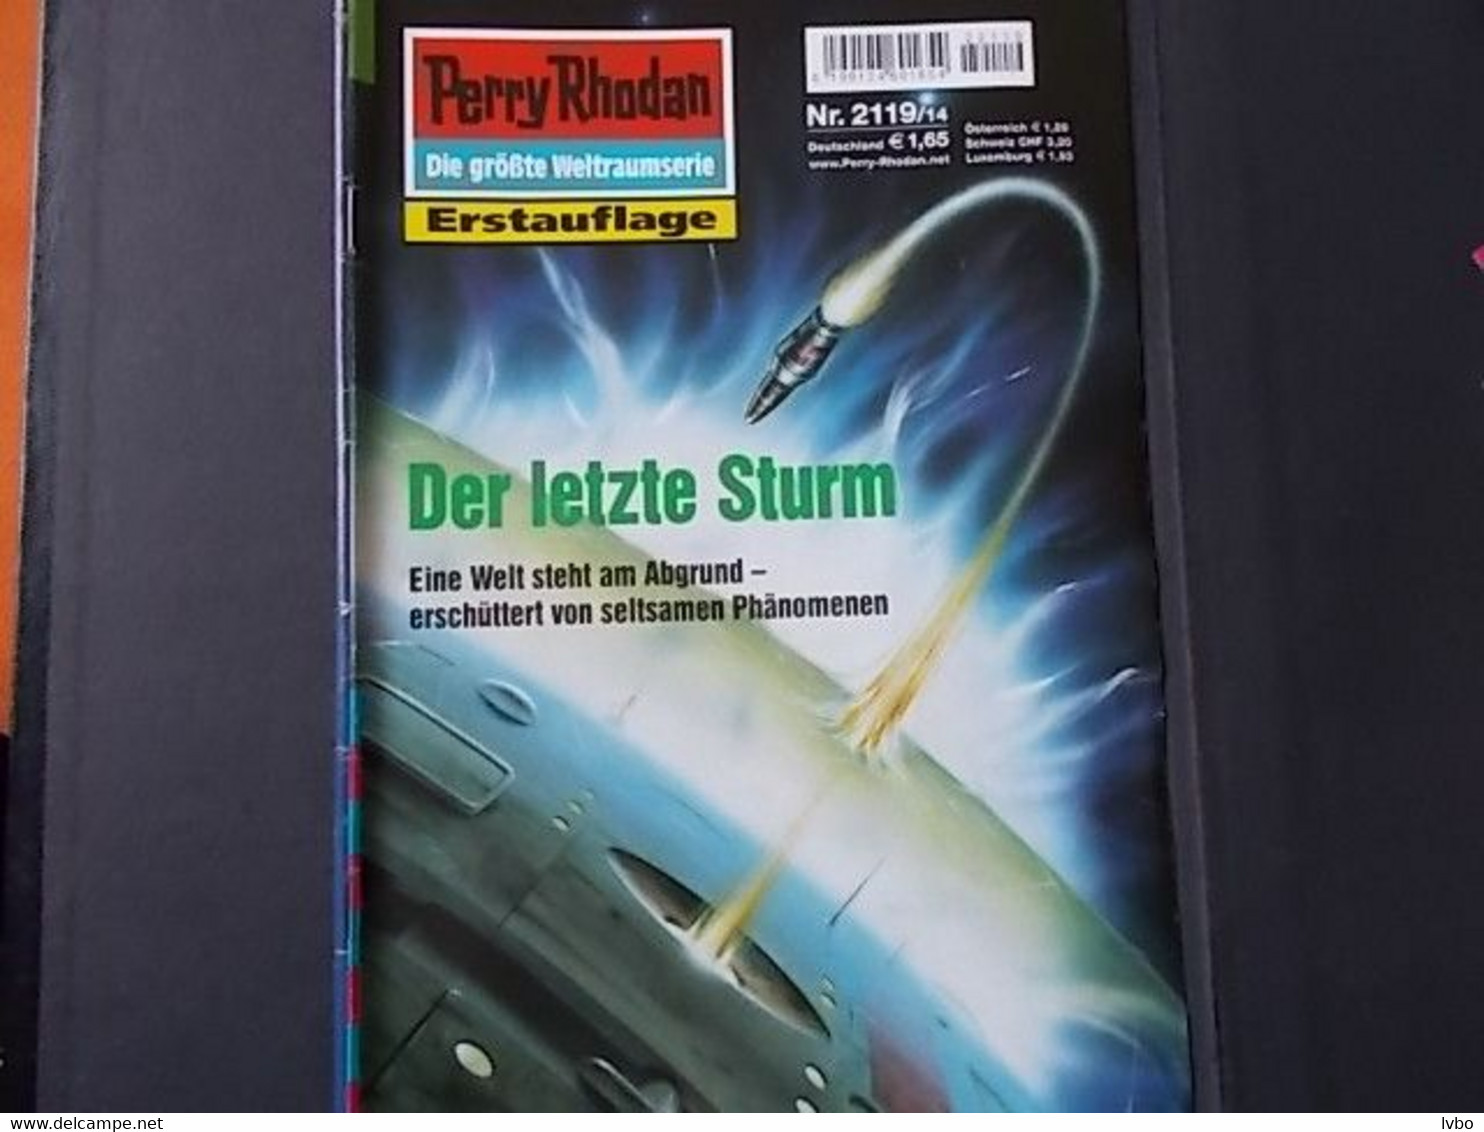 Perry Rhodan Nr 2119 Erstauflage Der Letzte Sturm - Science-Fiction